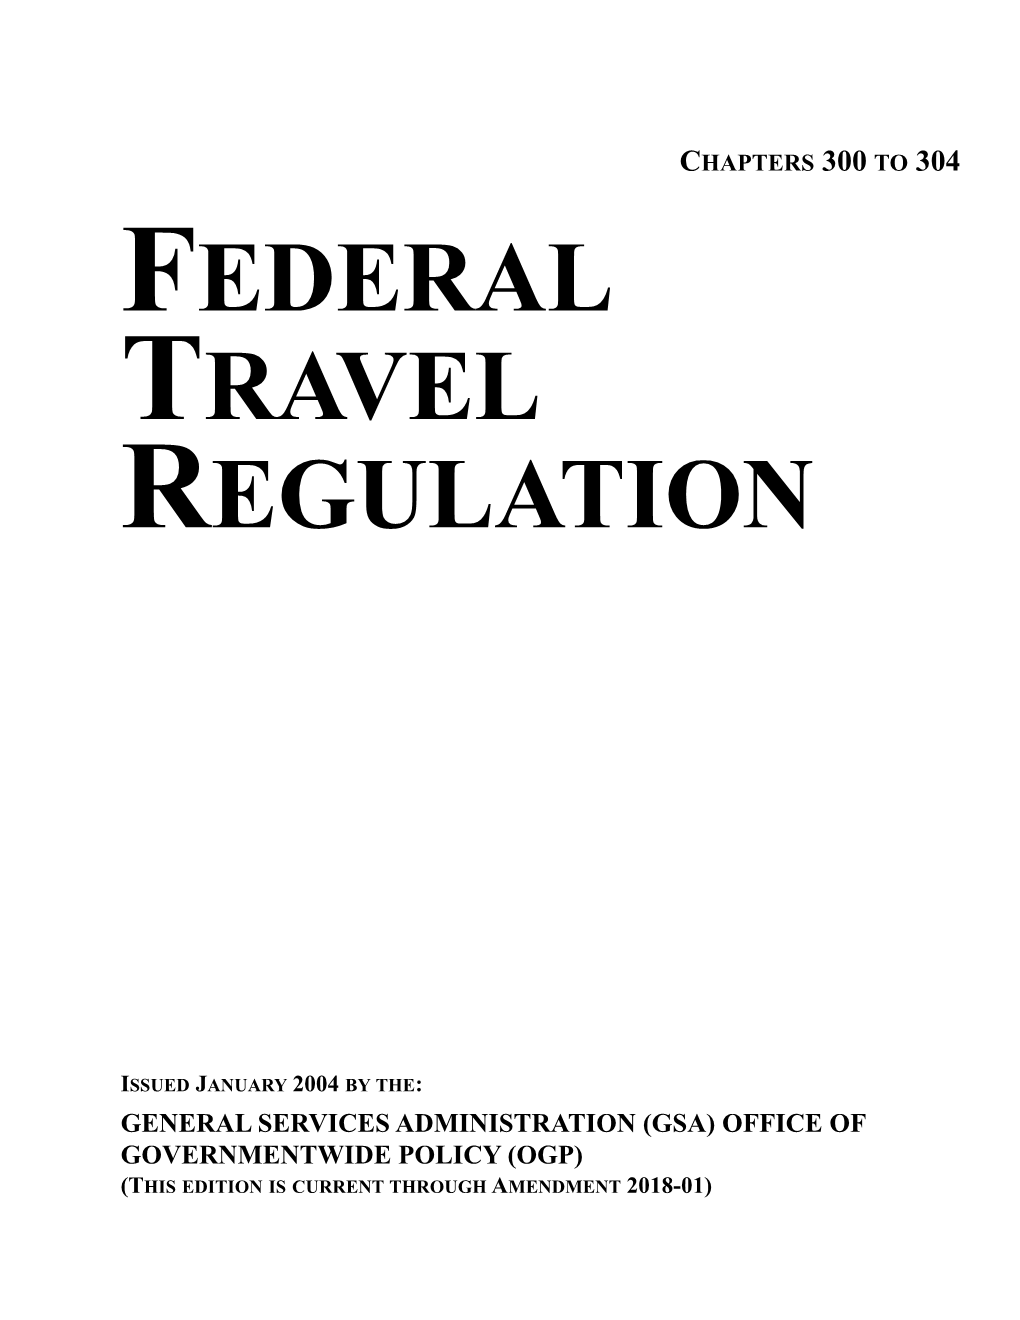 Federal Travel Regulation